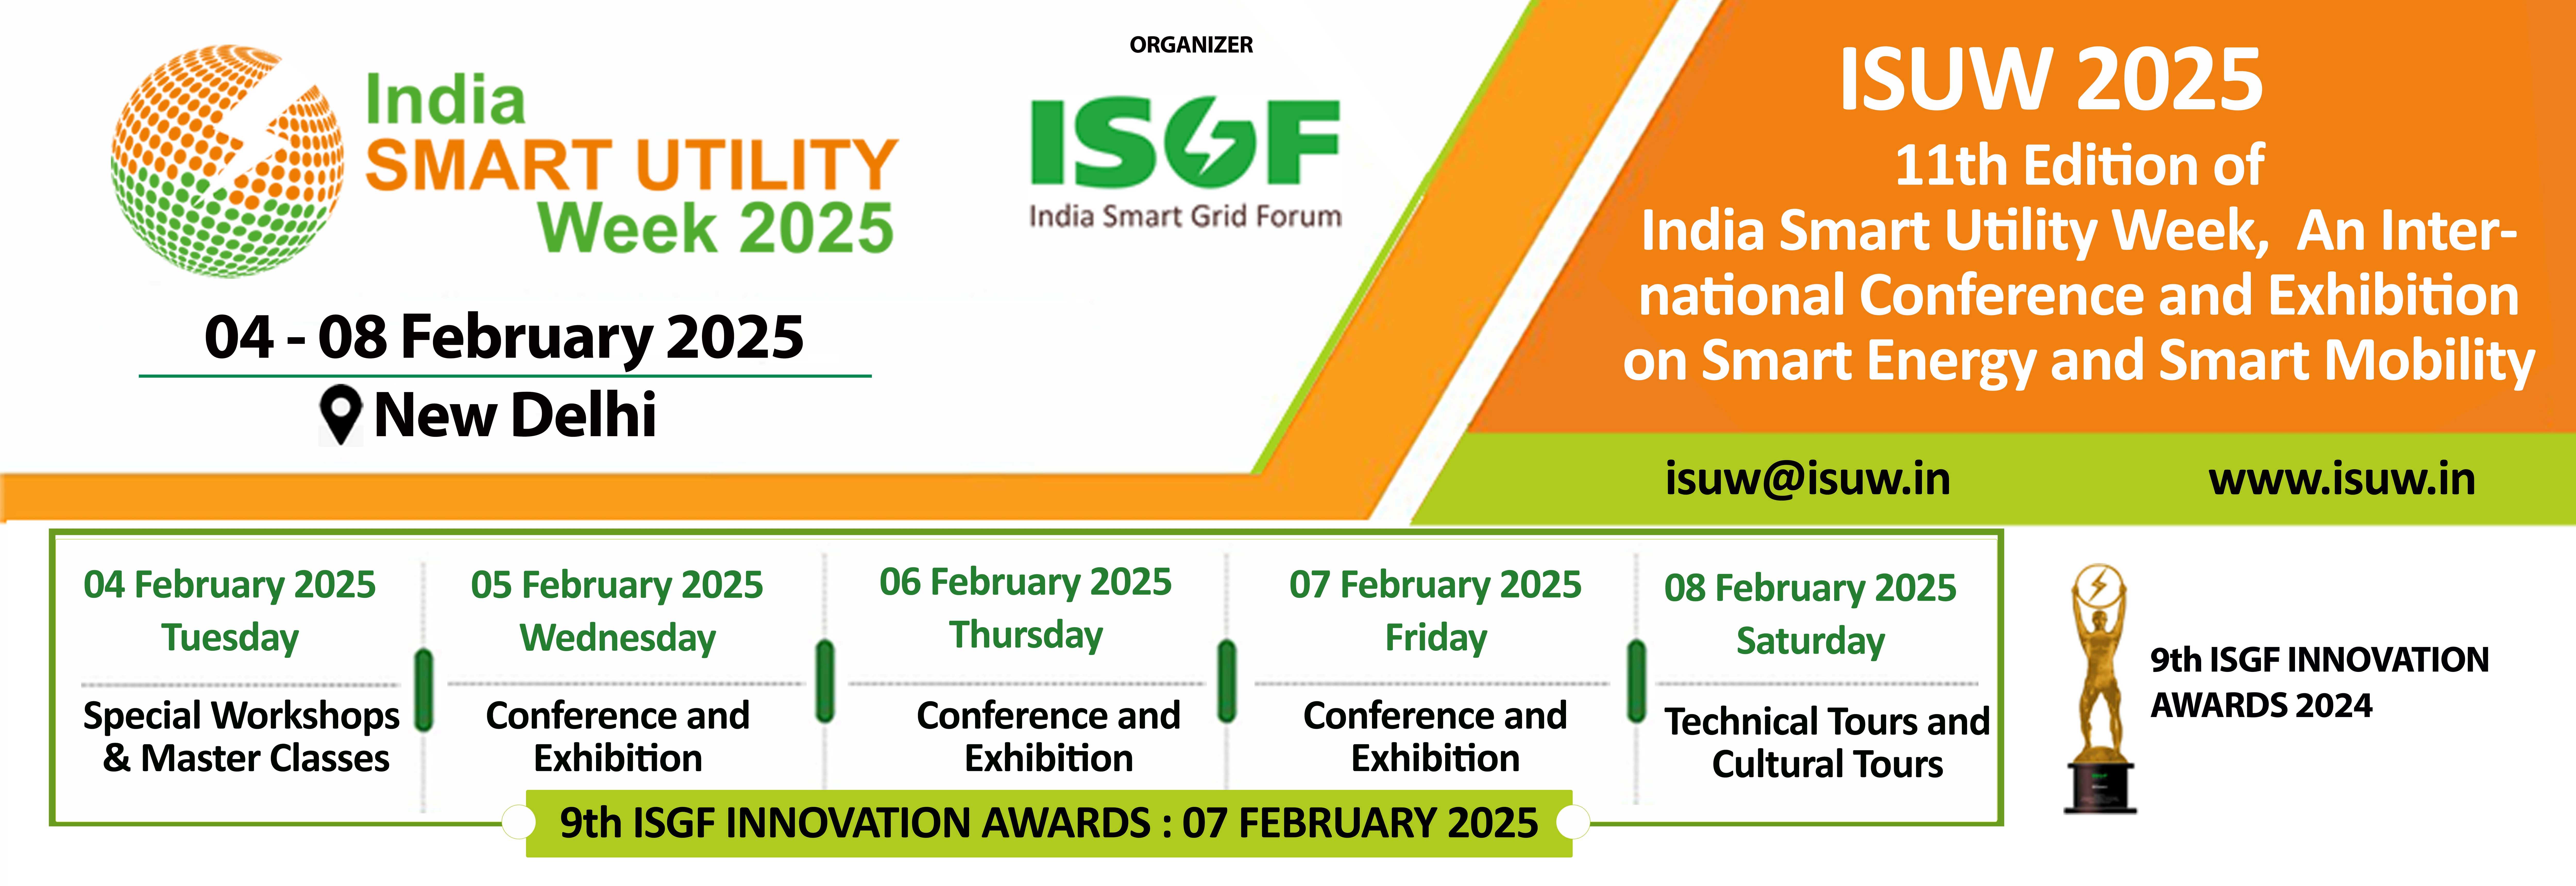 INDIA SMART UTILITY WEEK 2025, New Delhi, Delhi, India